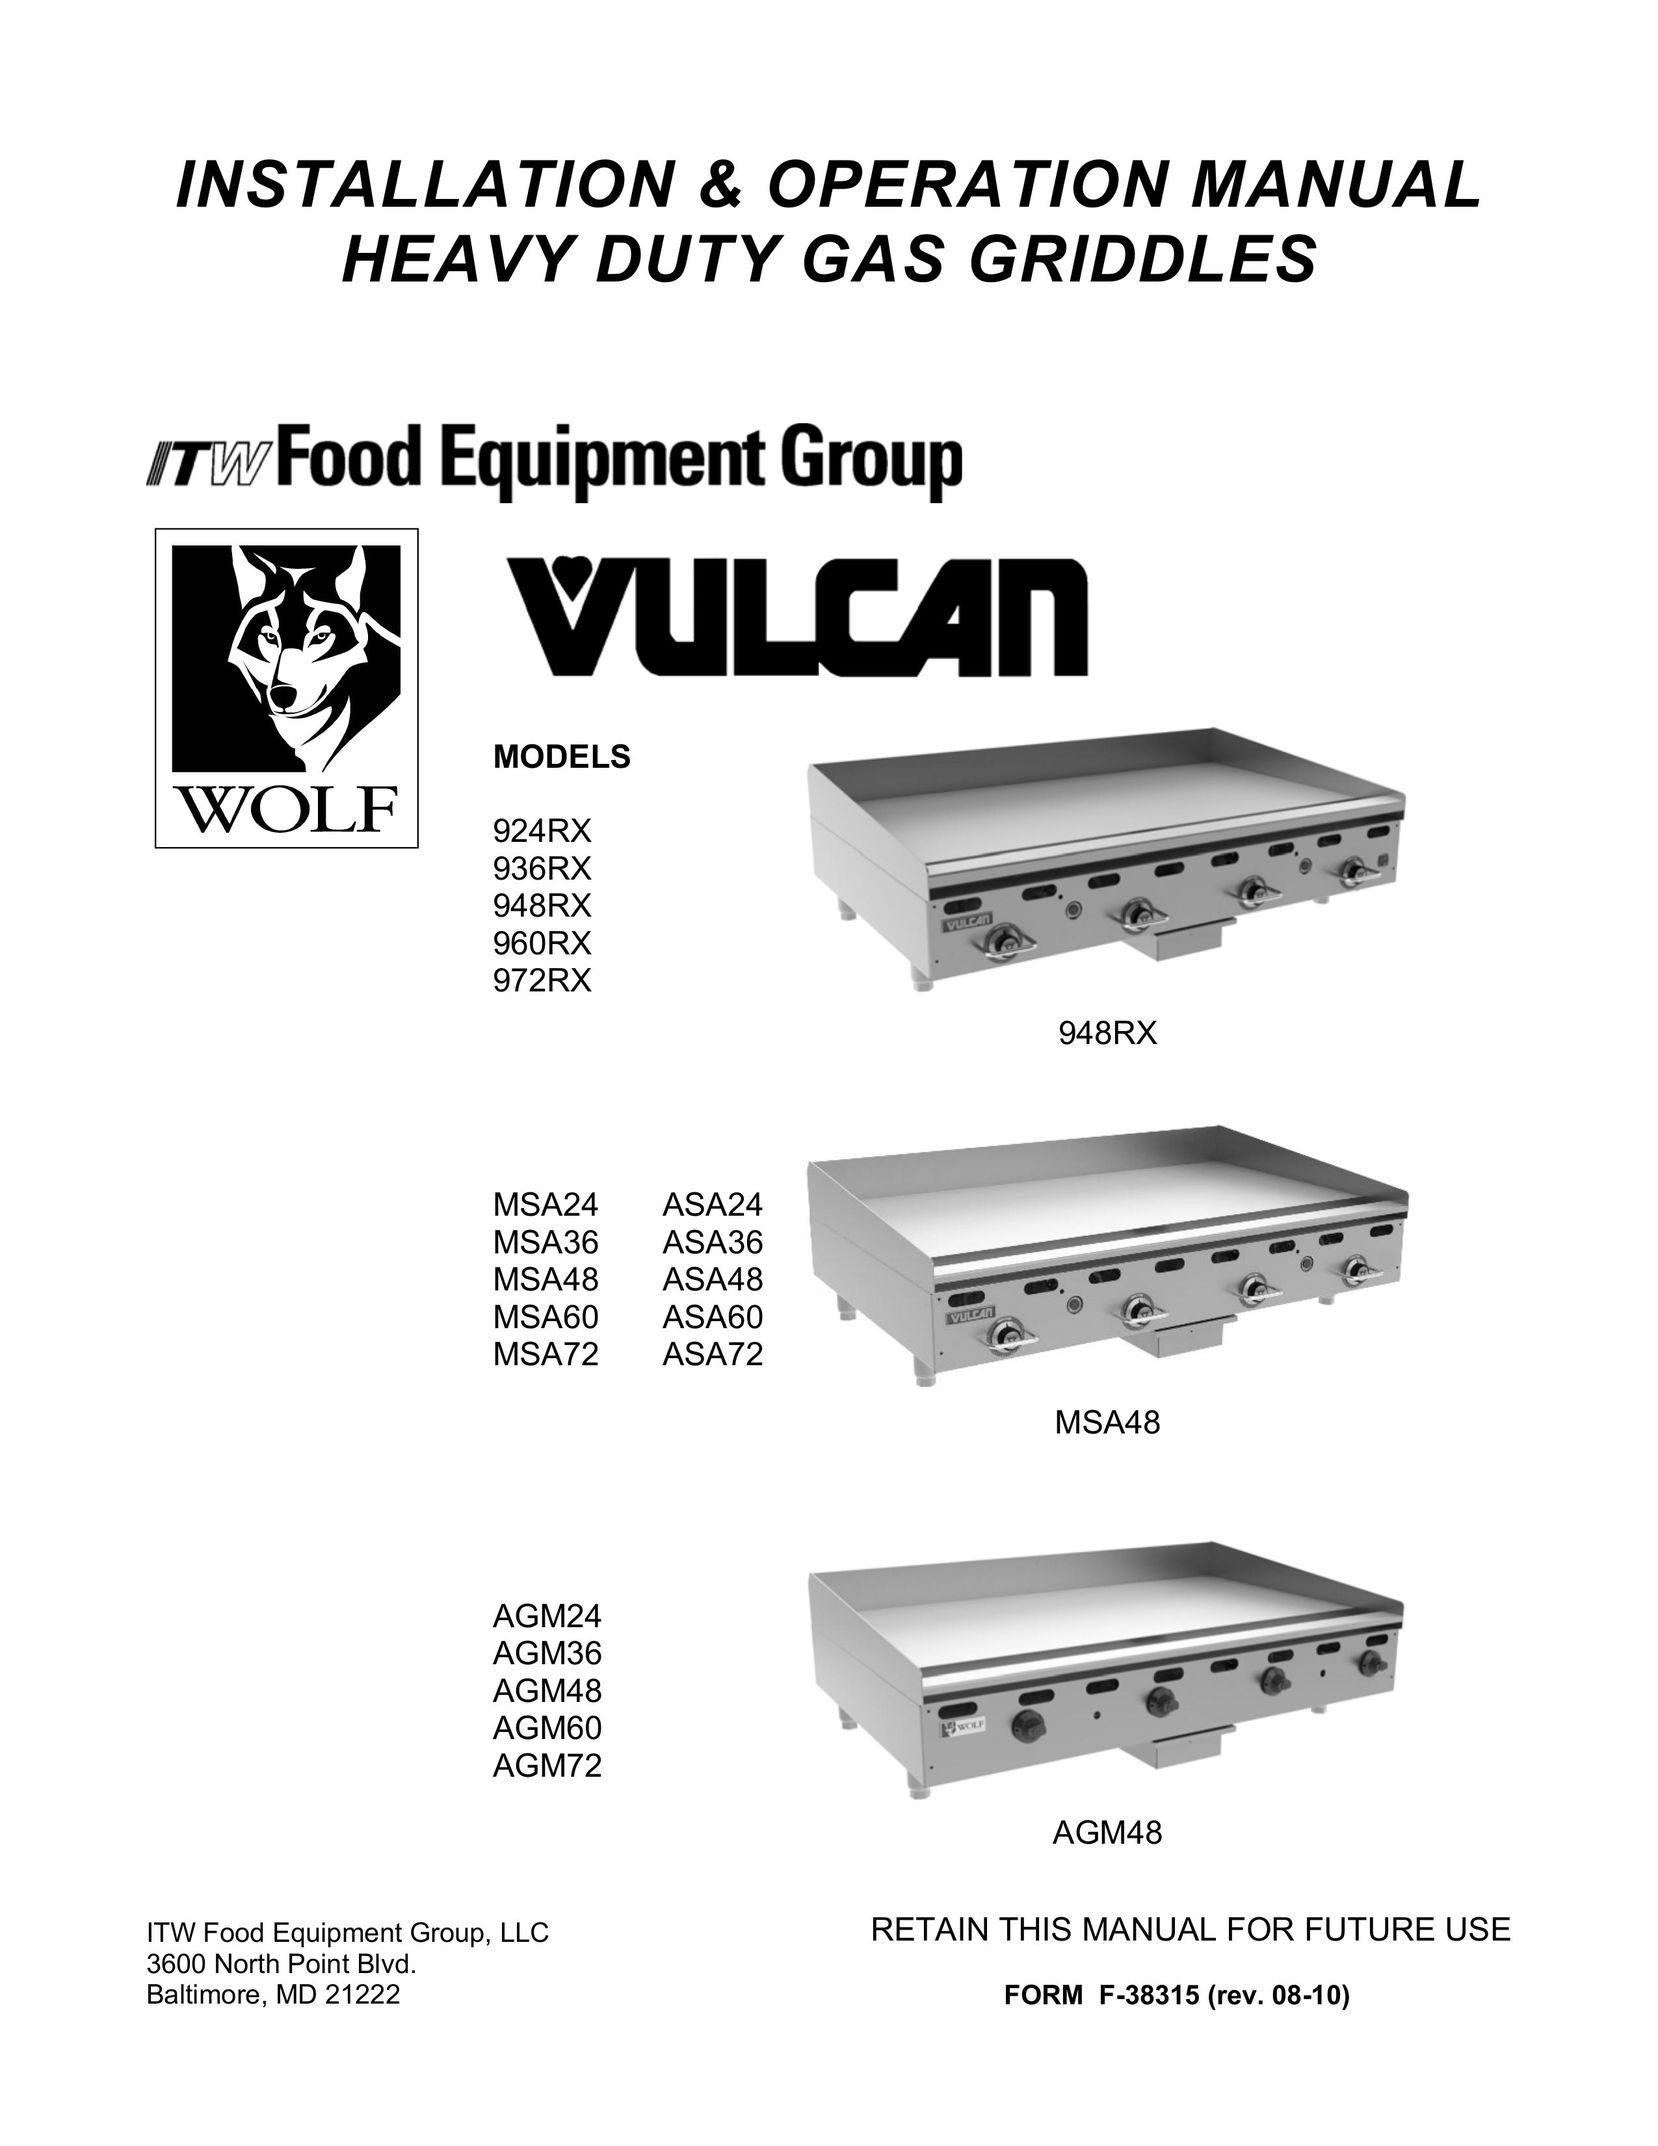 Vulcan-Hart AGM72 Griddle User Manual